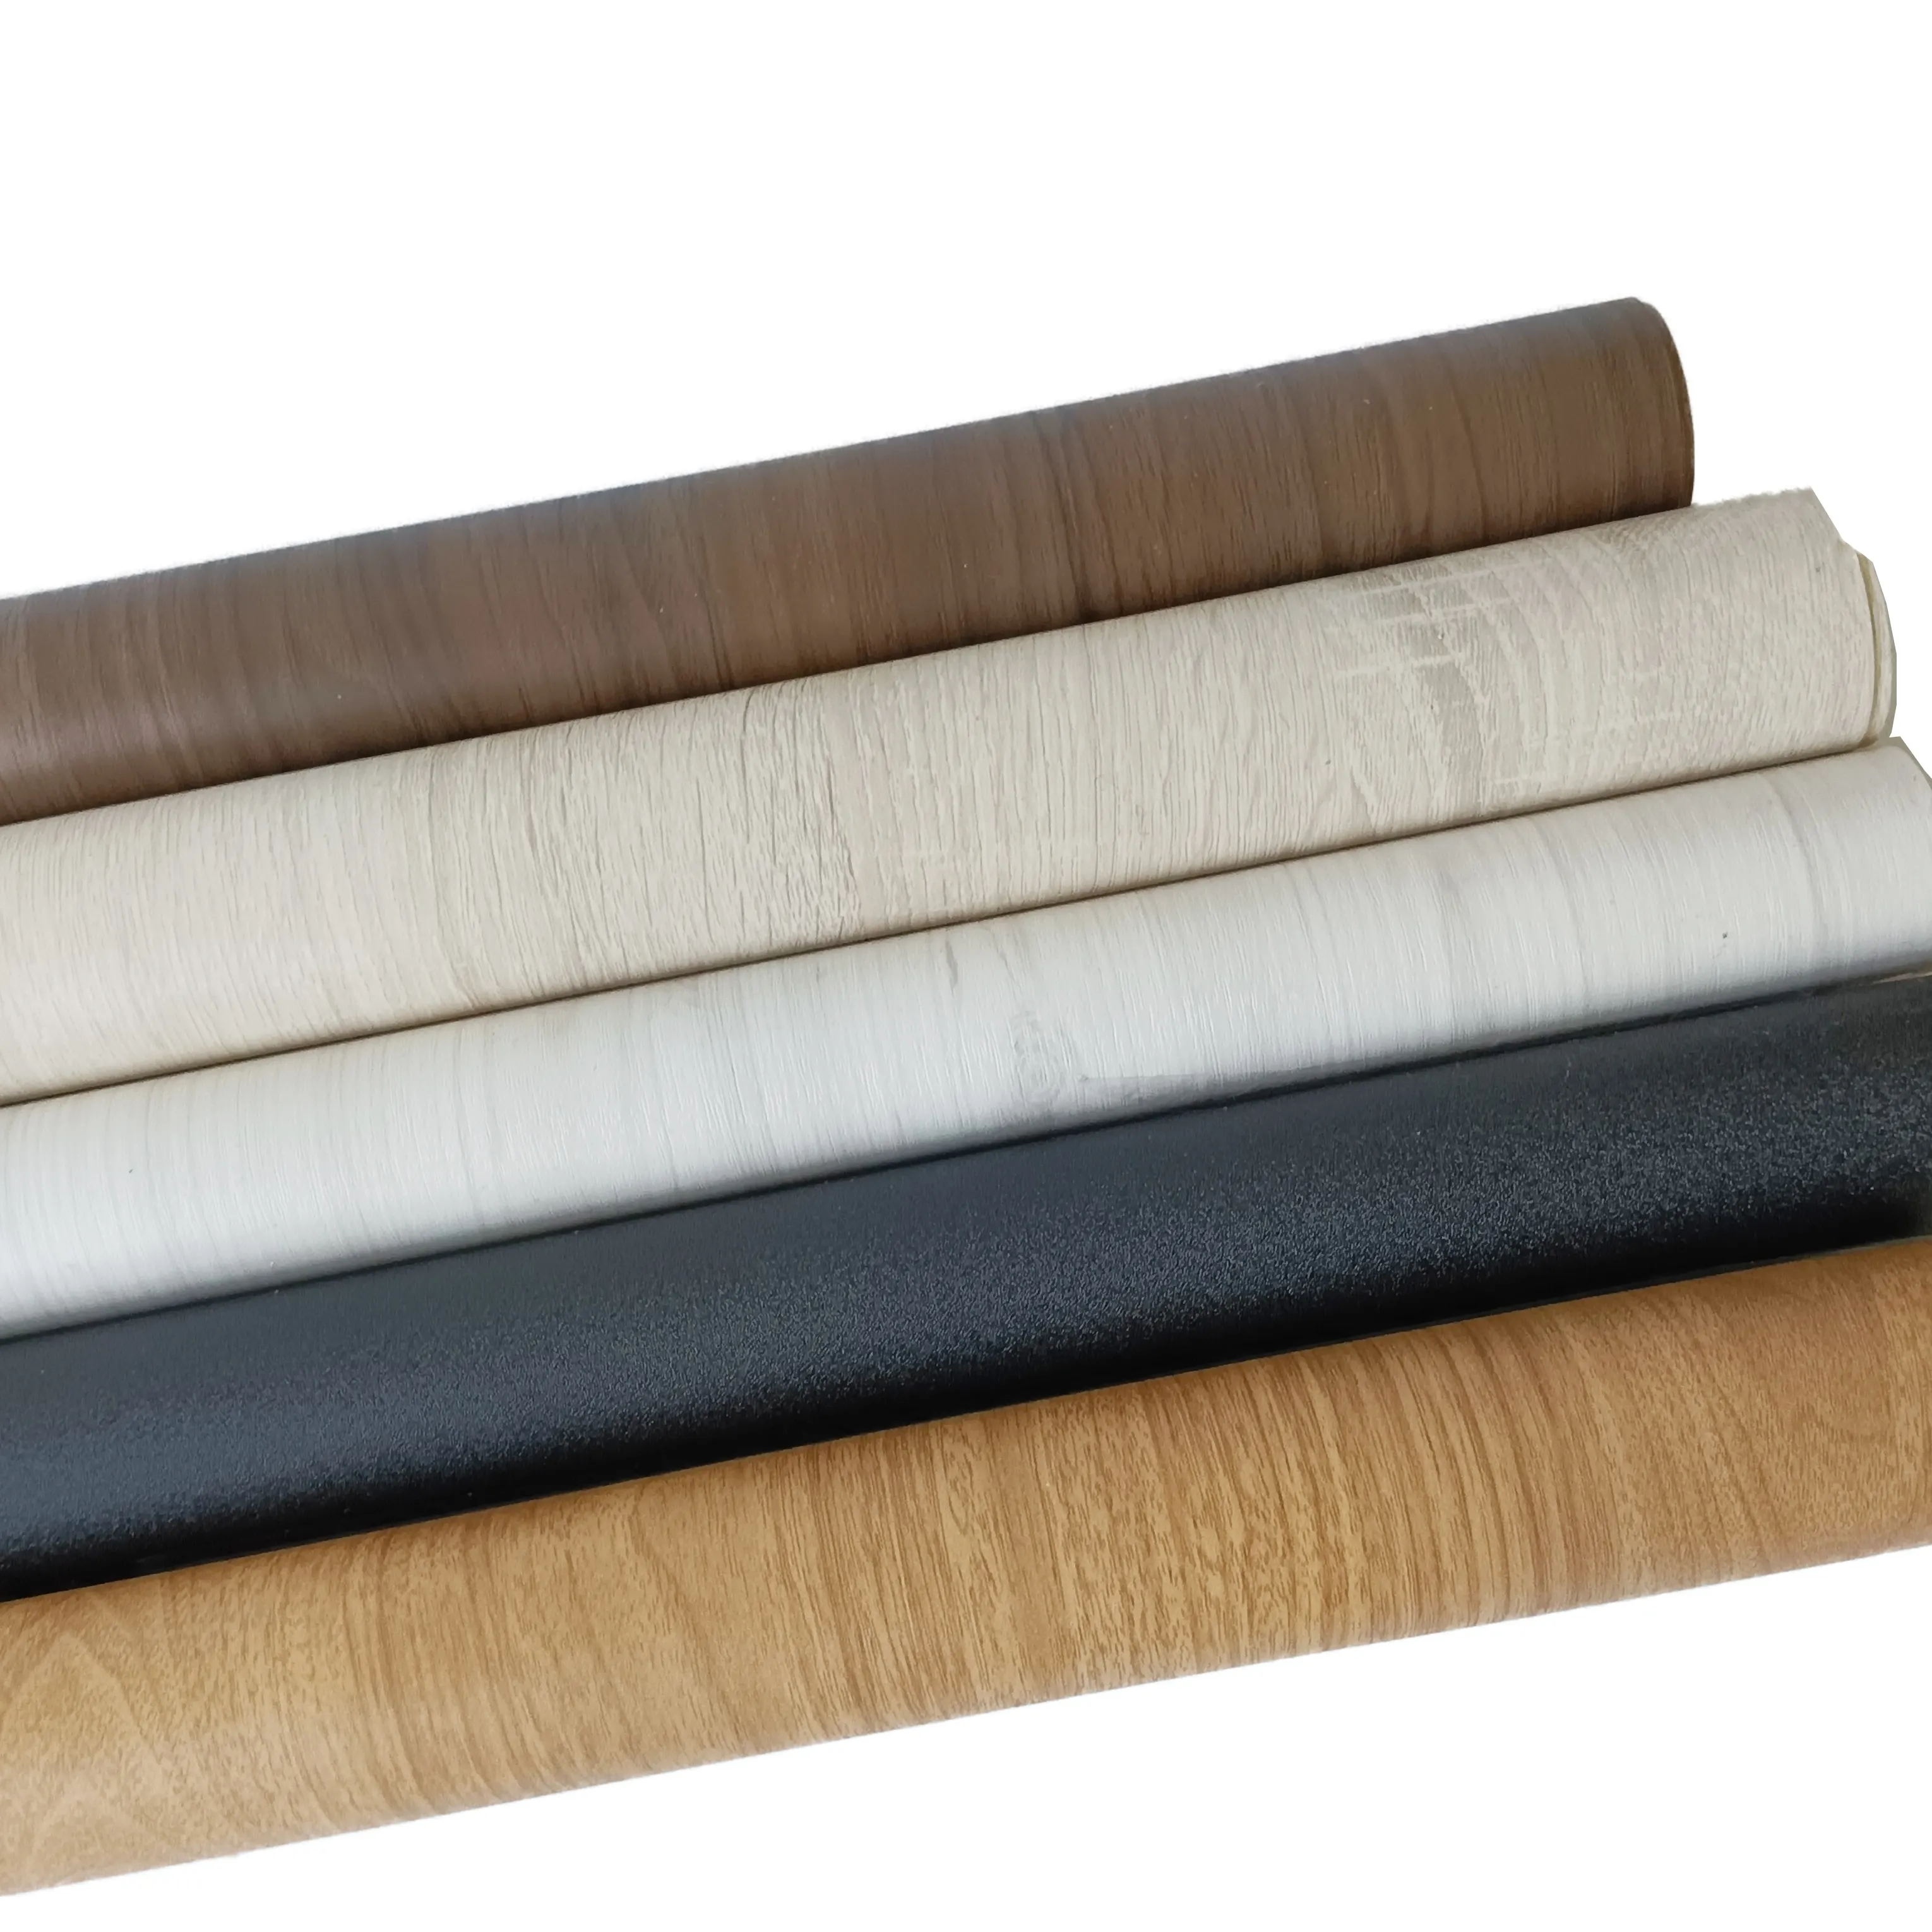 Pellicola decorativa in PVC per la copertura di mobili da cucina porta pelle sottovuoto membrana pressa laminazione buon prezzo